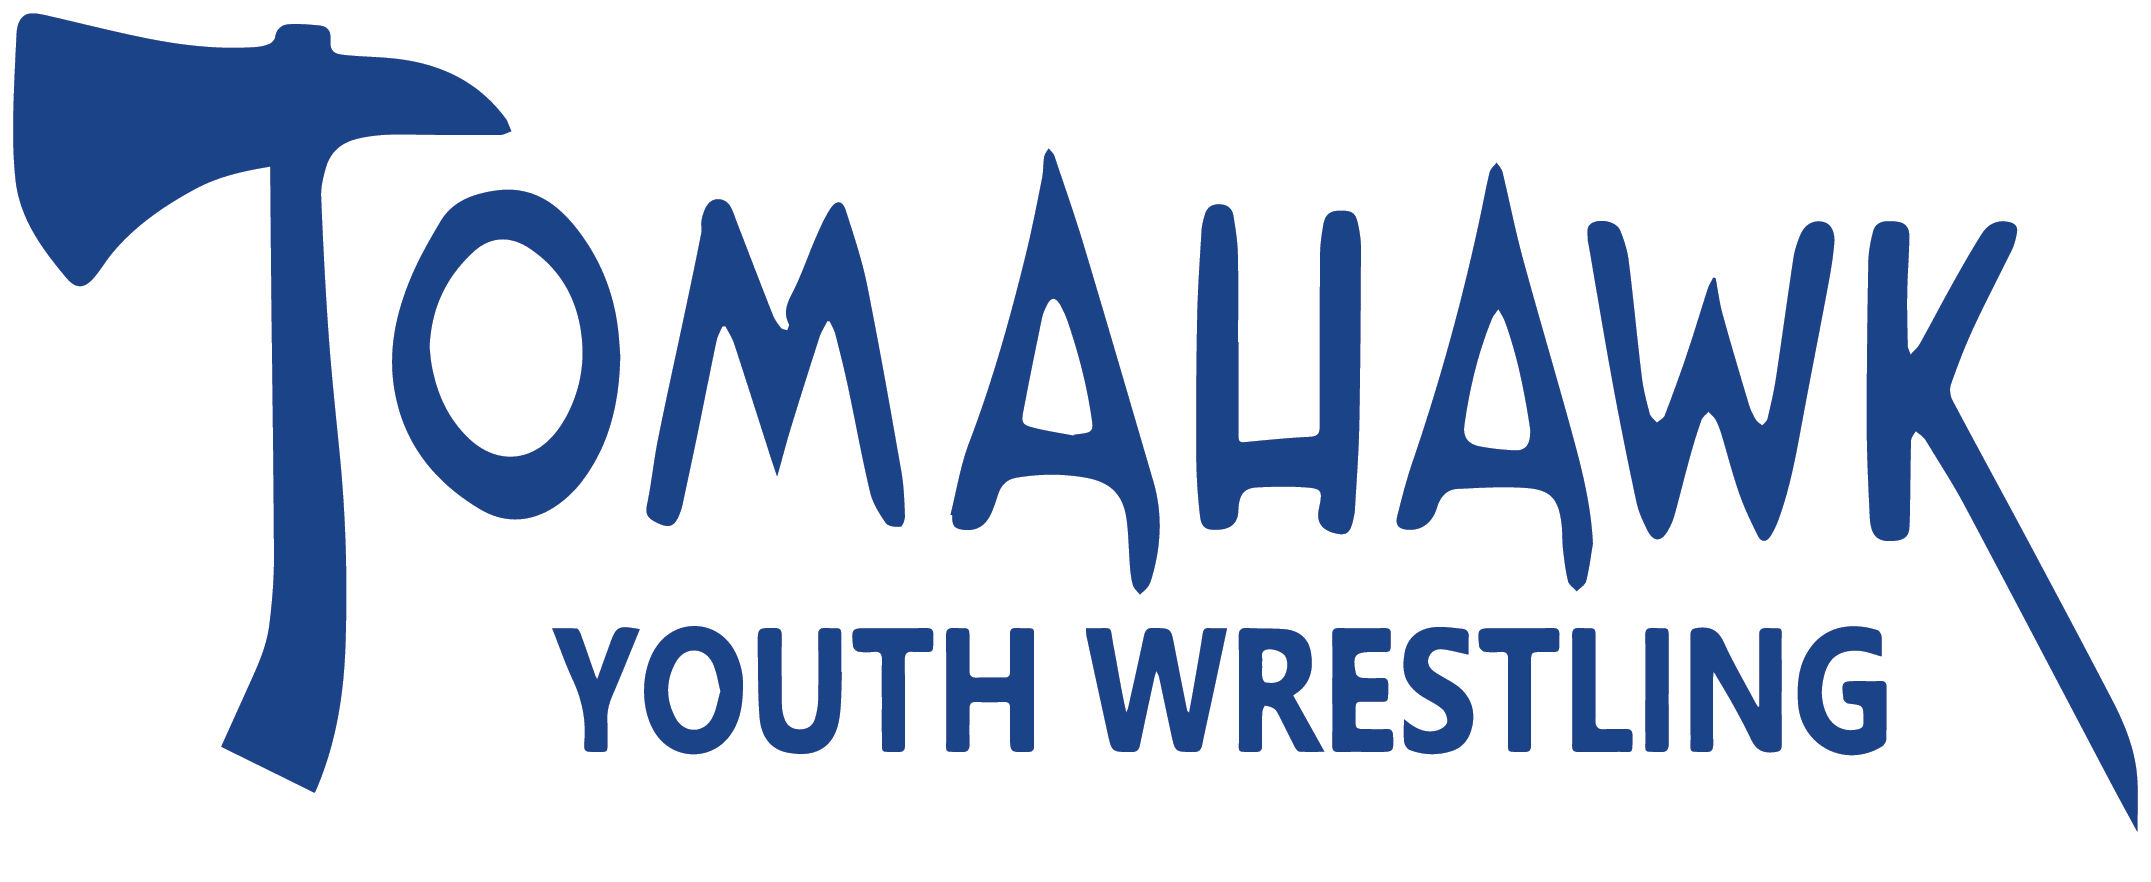 Tomahawk Wrestling logo